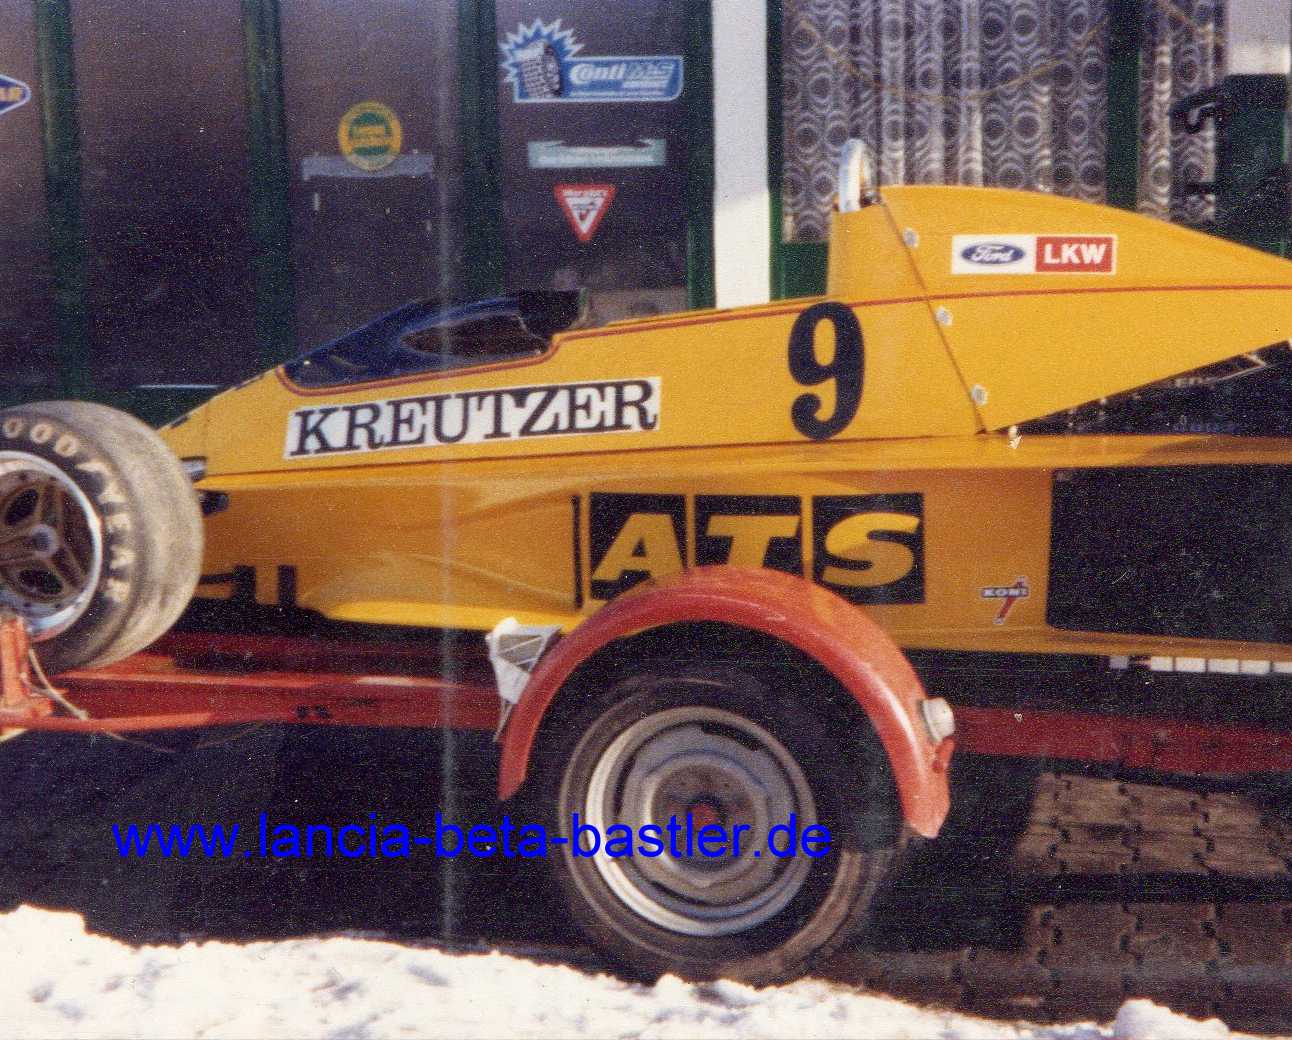 ATS Formel 1 Wagen 1979 Mrz mit Kreutzer Schriftzug